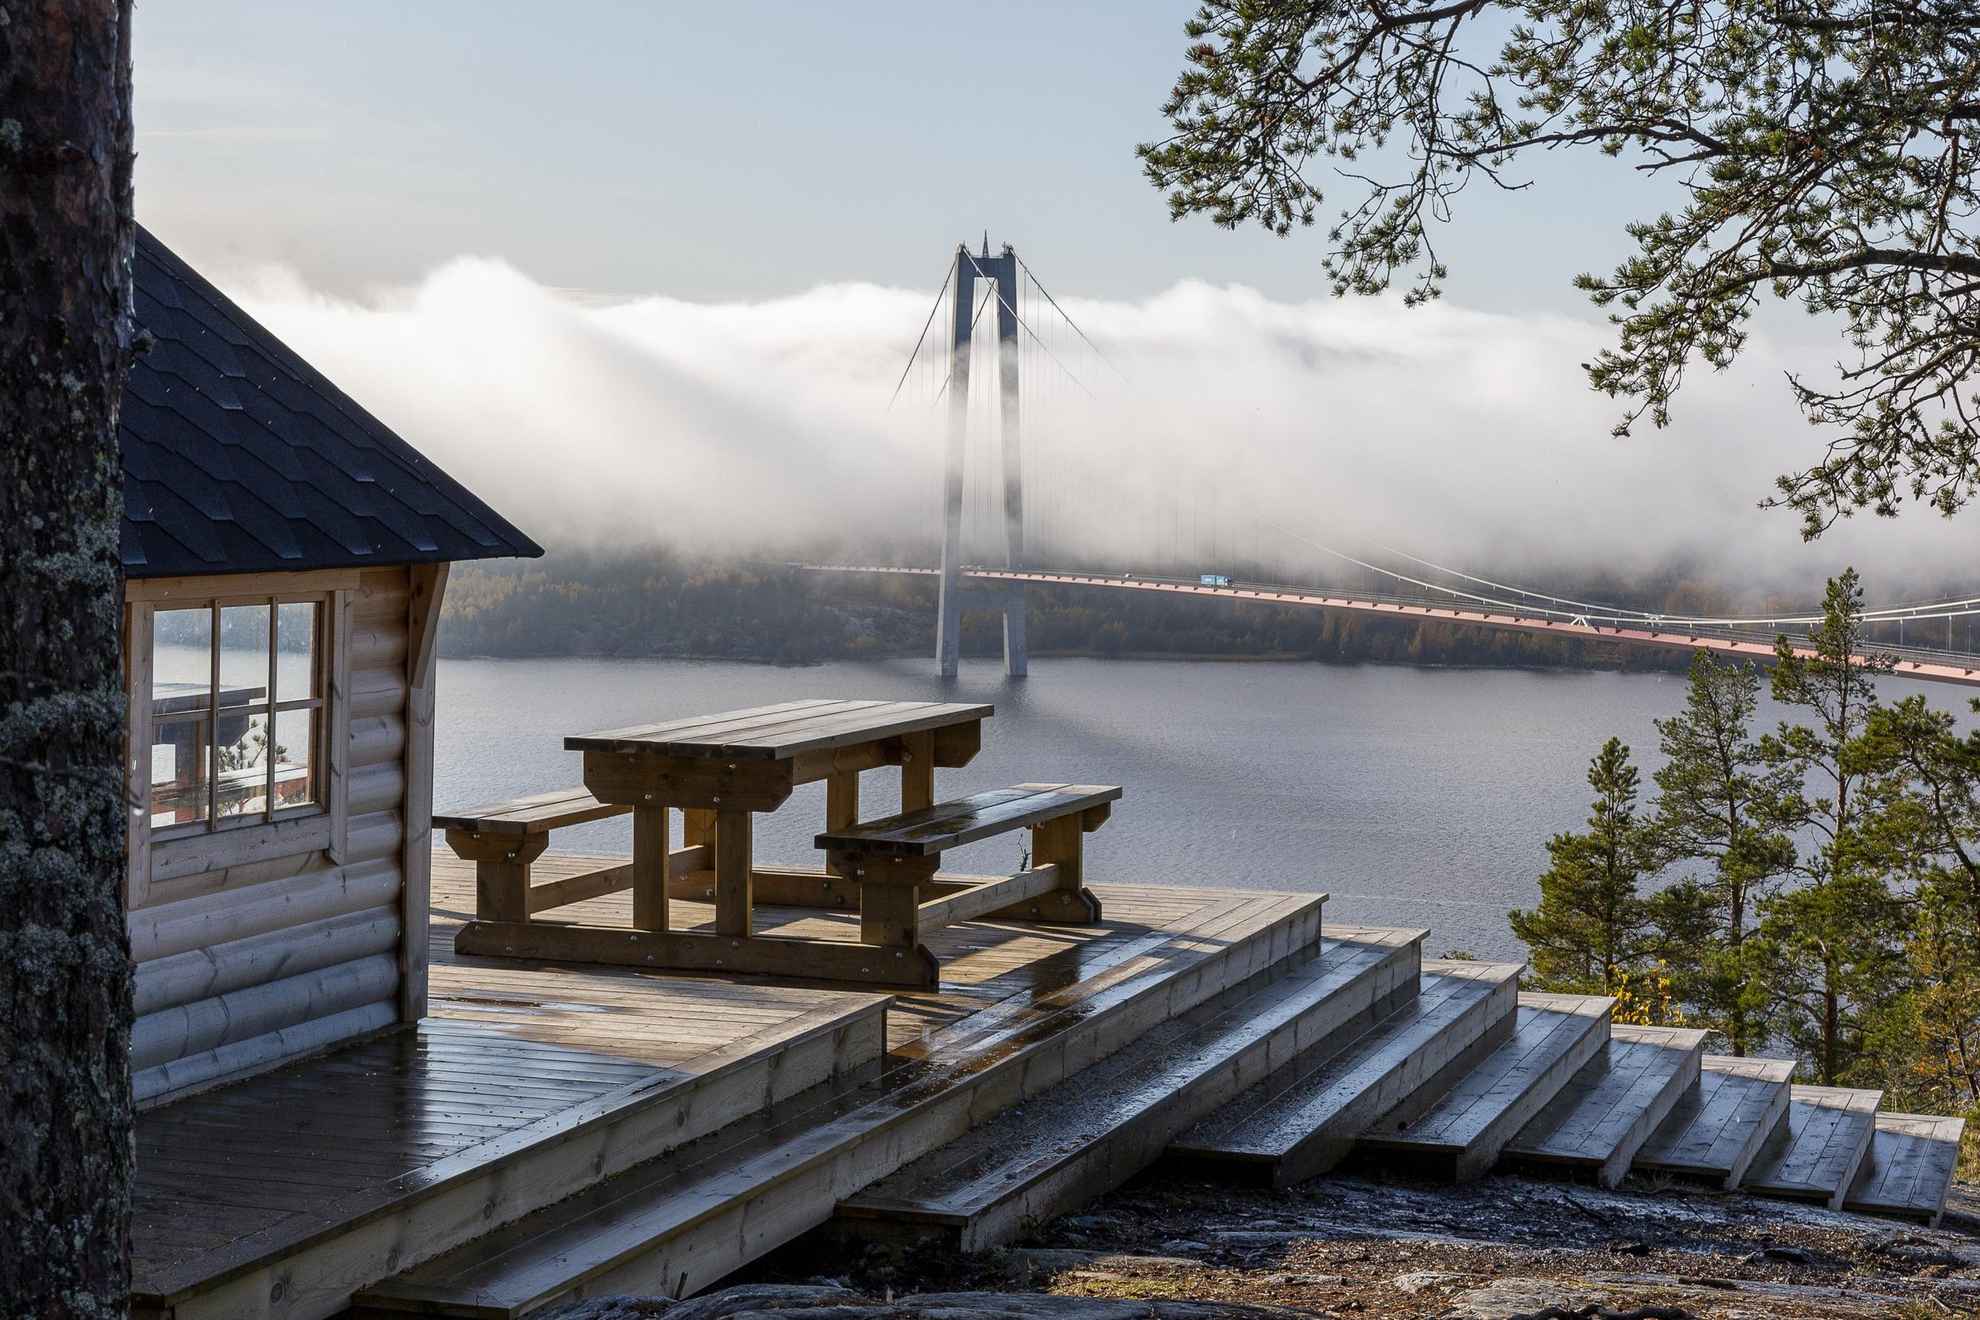 Ein hölzerner Picknicktisch mit Blick auf den Fluss Ångermanälven und die Hohe-Küsten-Brücke (Högakustenbron).